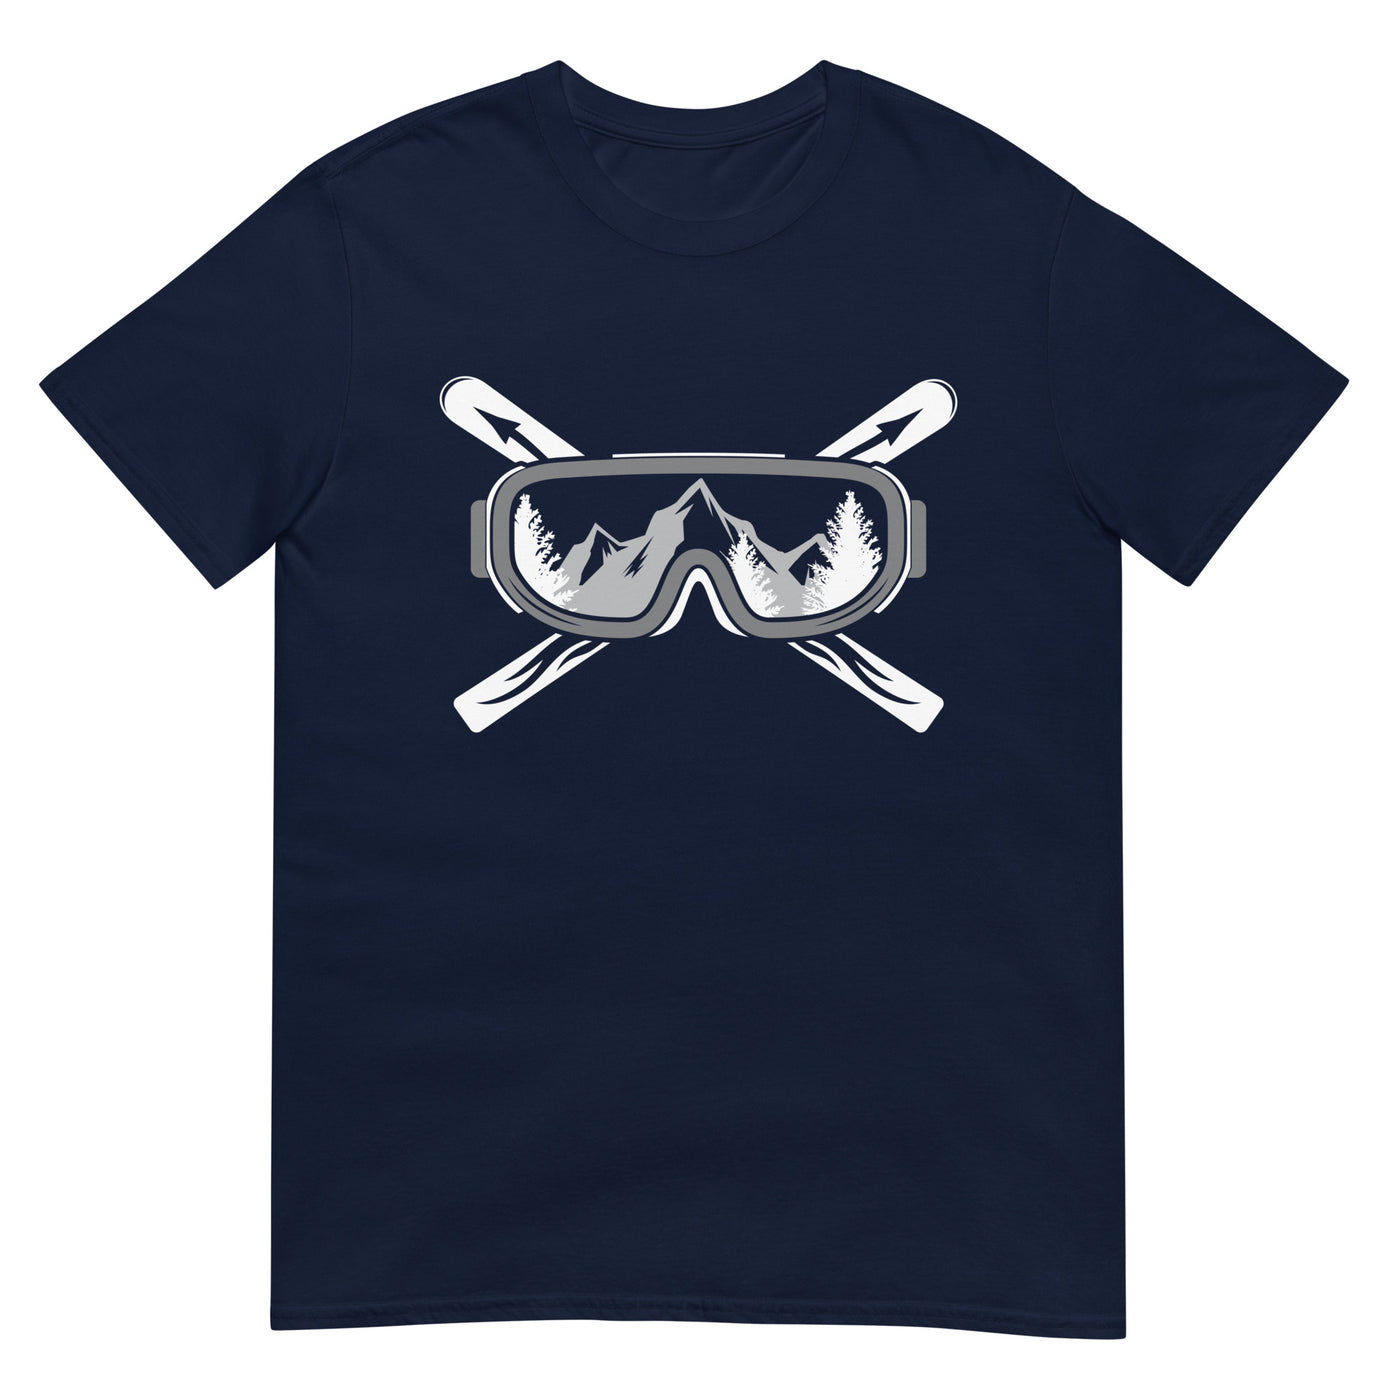 Berge Skier - T-Shirt (Unisex) klettern ski xxx yyy zzz Navy